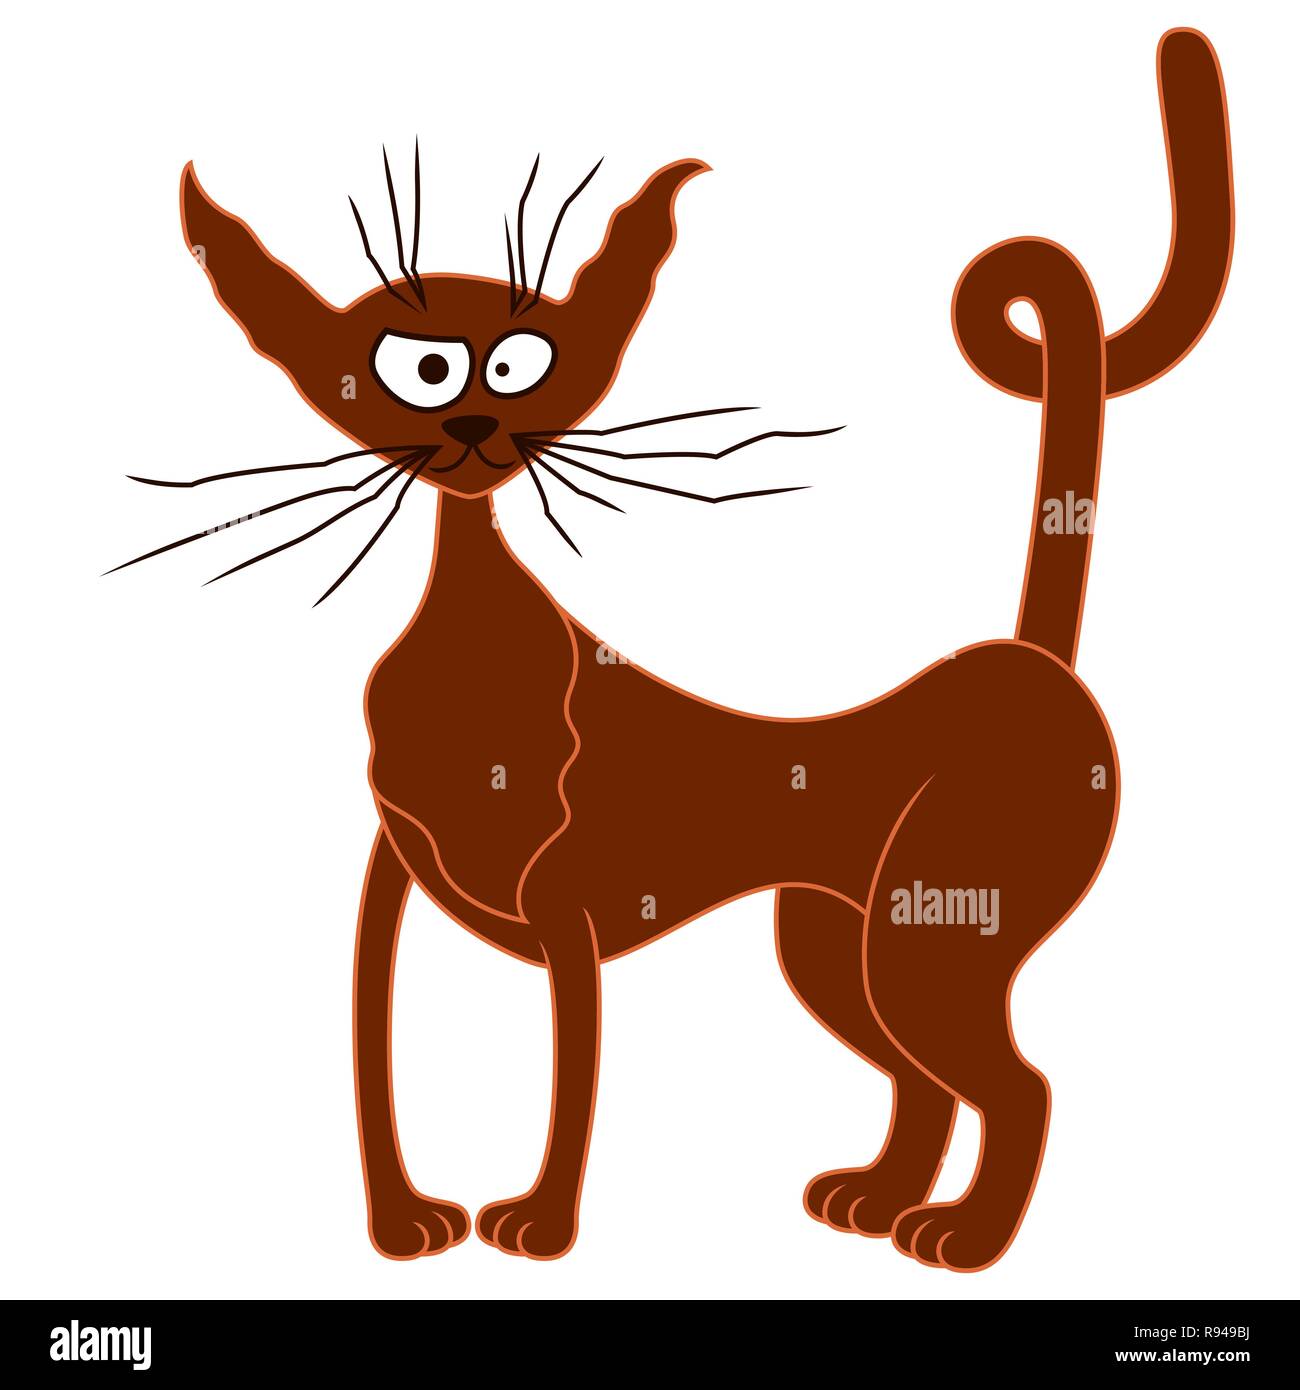 Amusant et drôle chat brun avec des moustaches de bande dessinée et les oreilles et queue torsadée, vecteur de dessin à main isolé sur fond blanc Illustration de Vecteur